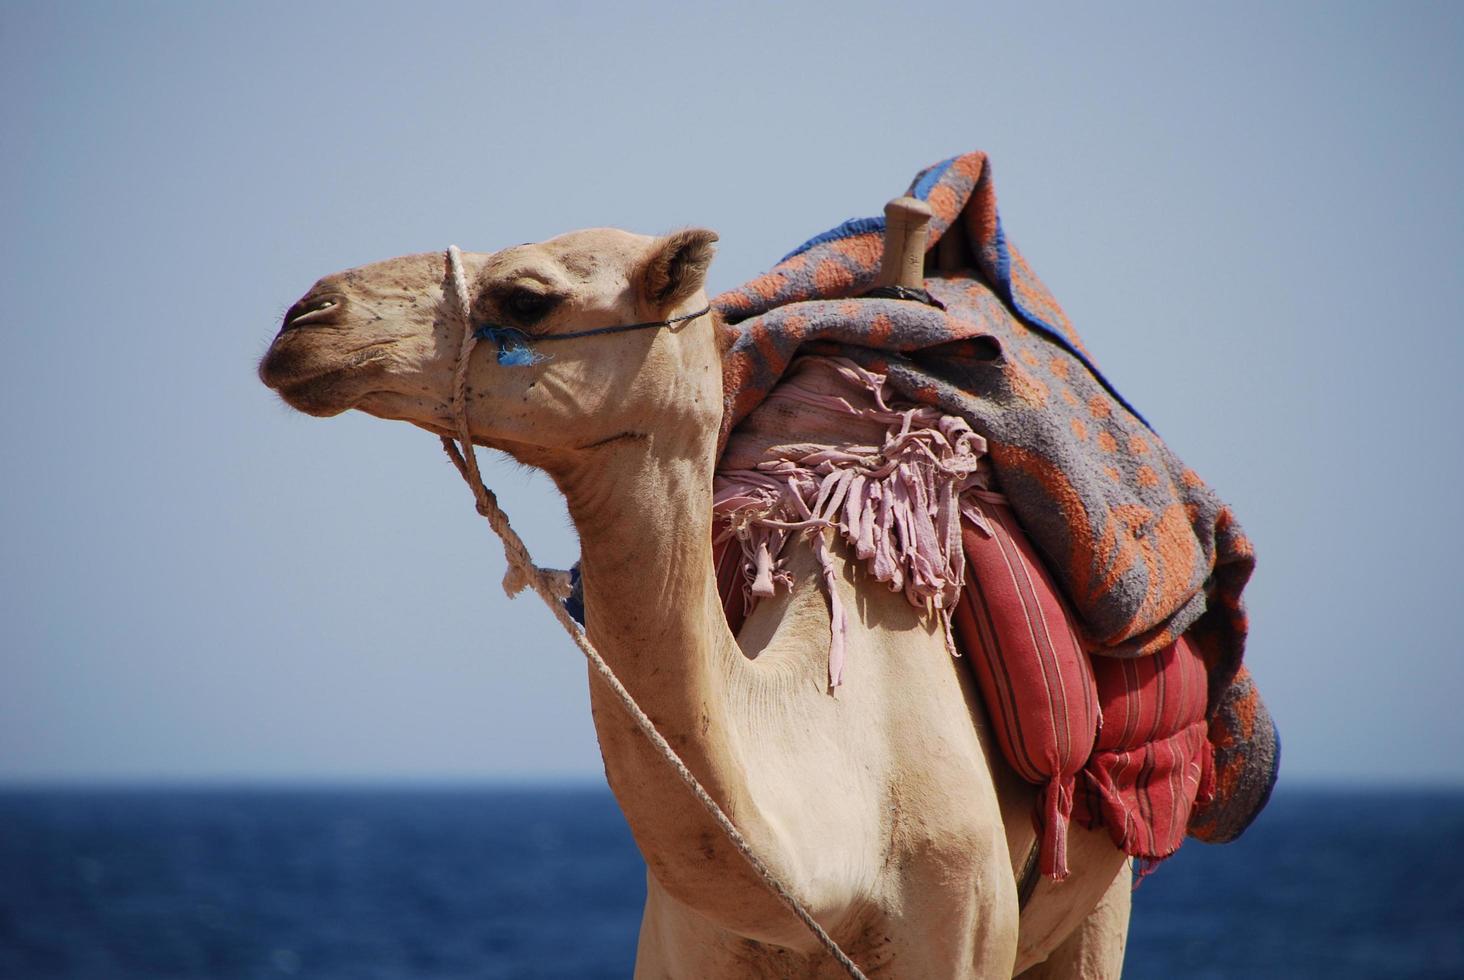 camello en la playa de vacaciones en egipto se ve foto